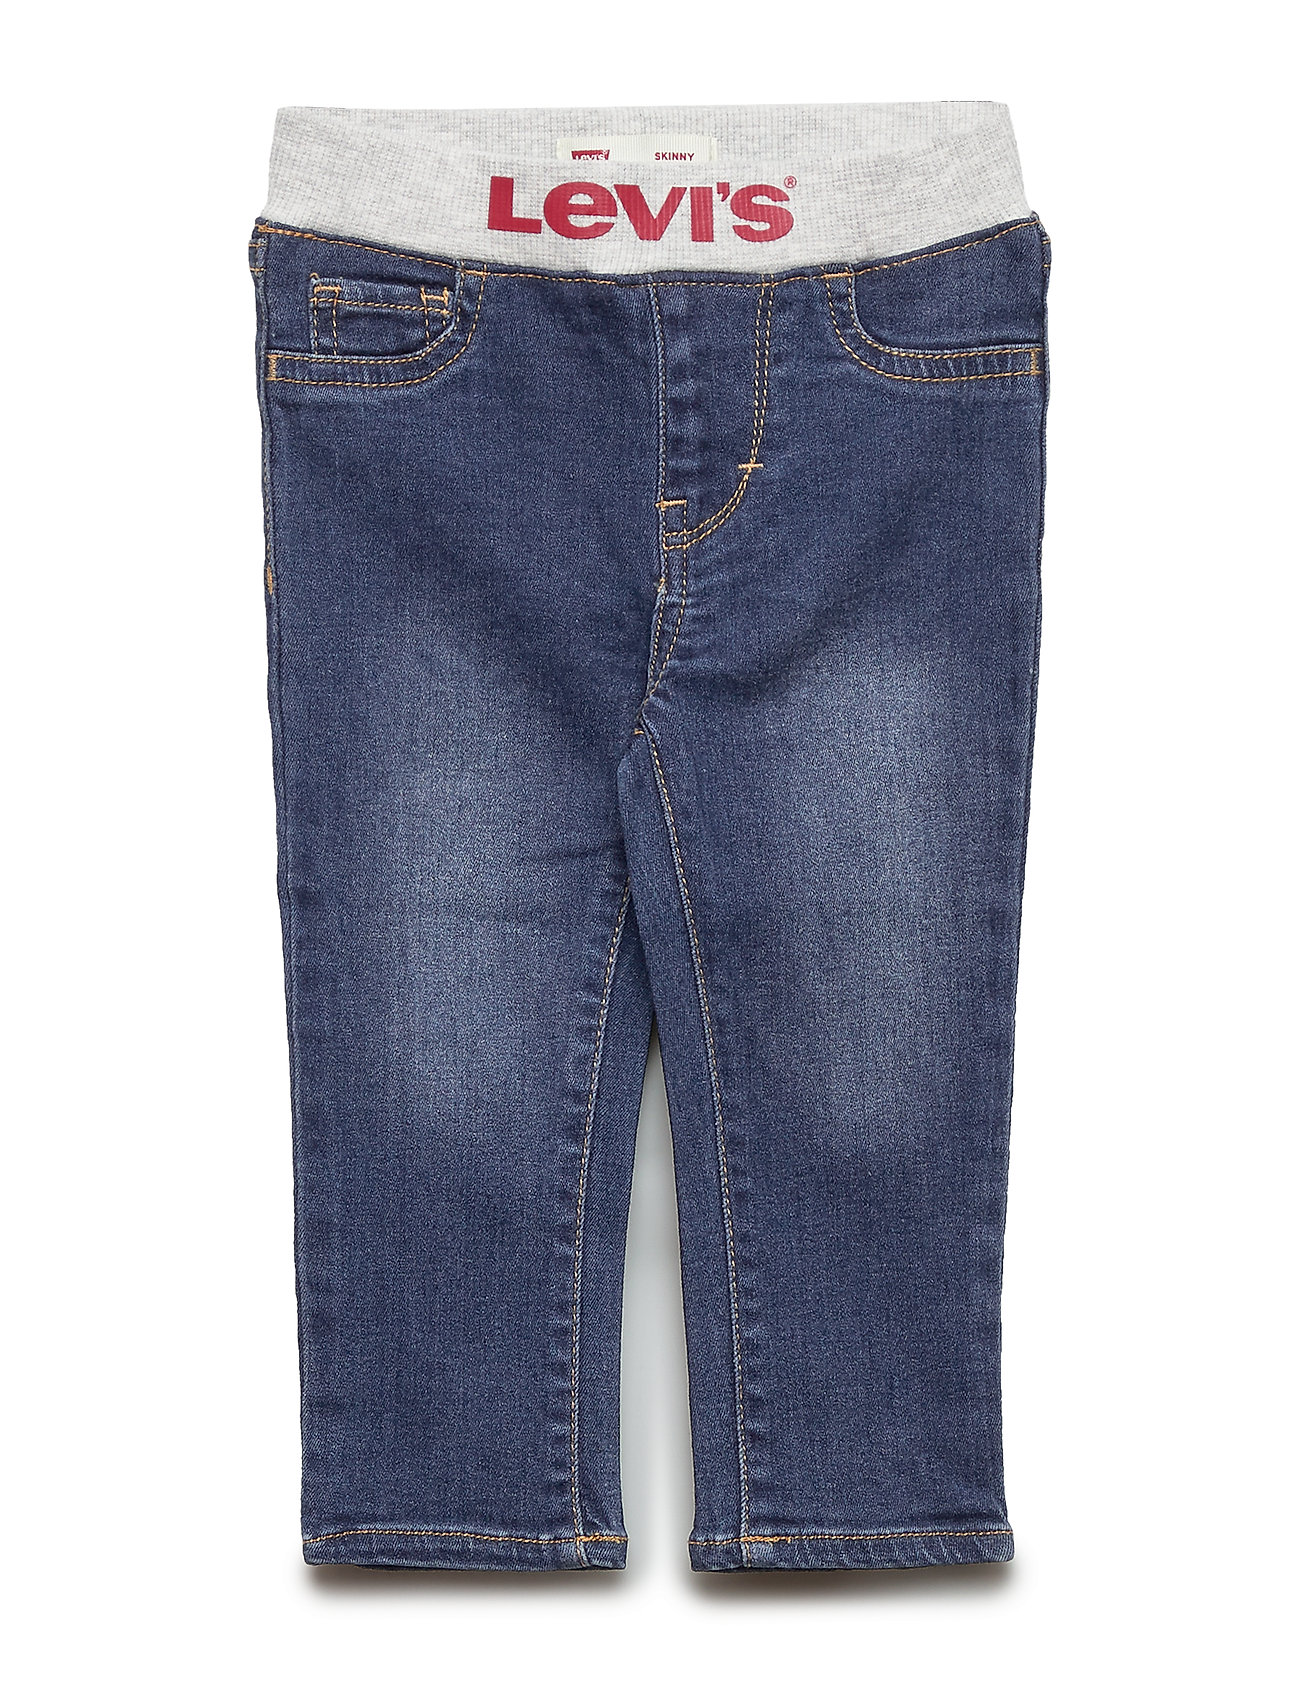 jeans west levis